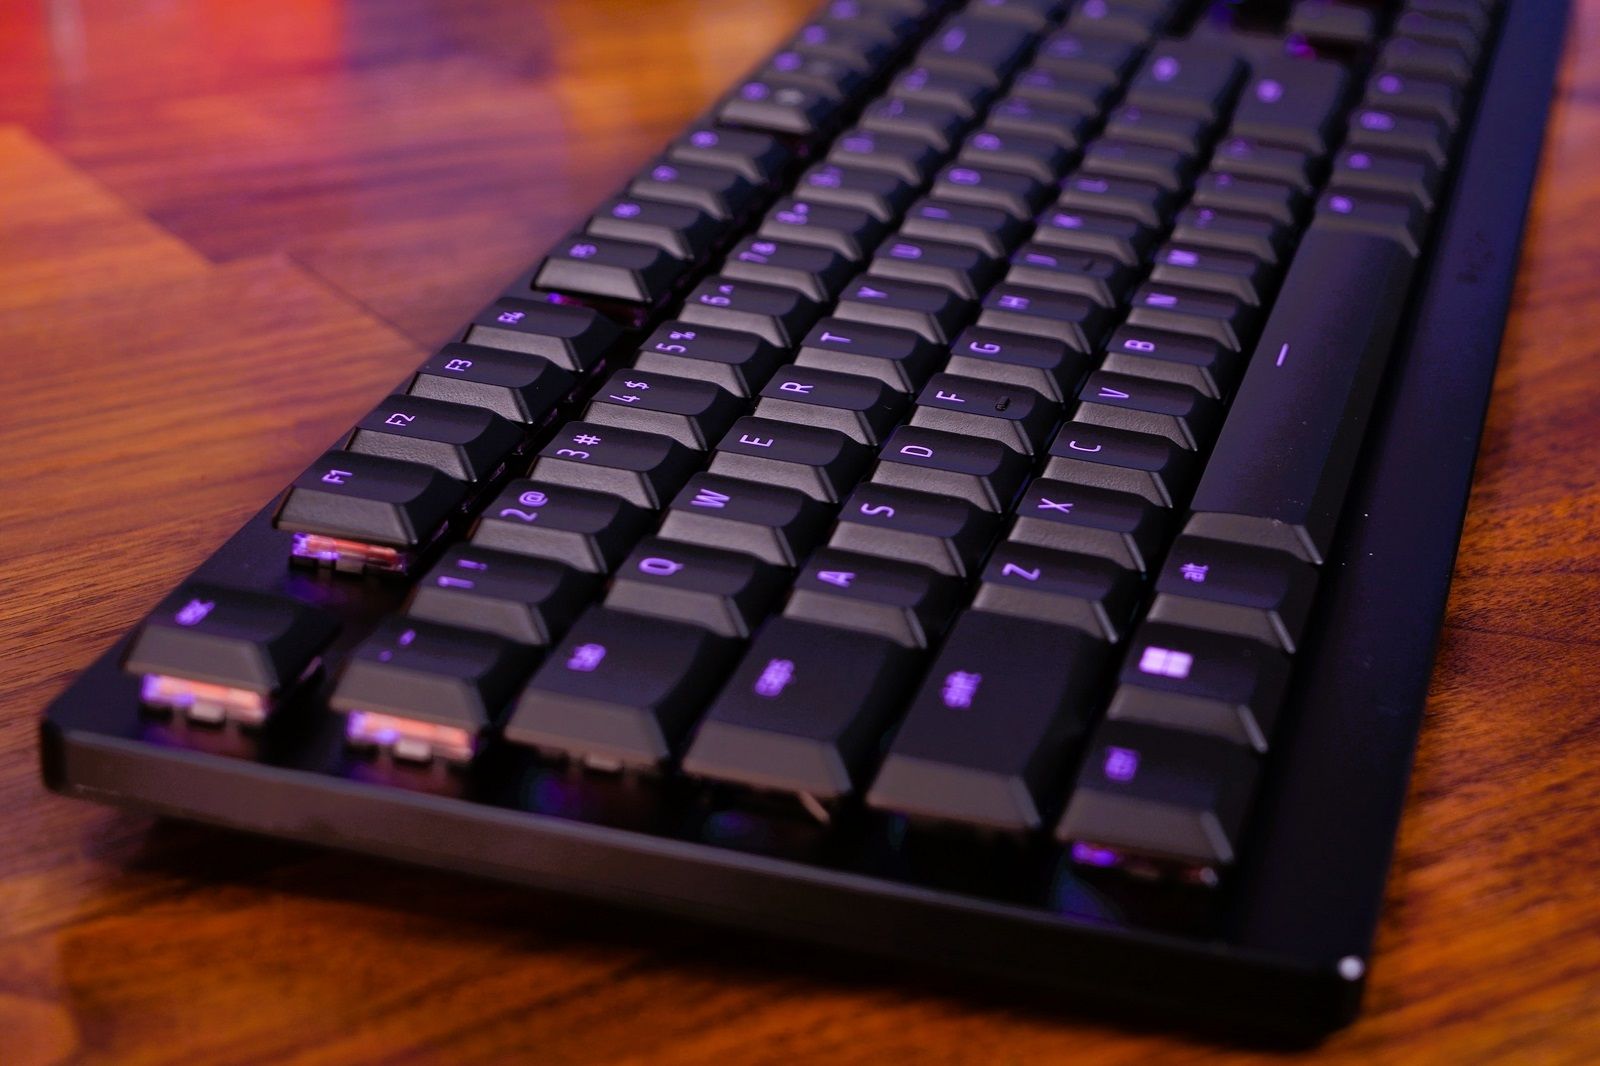 Razer DeathStalker V2 Pro keyboard review photo 15